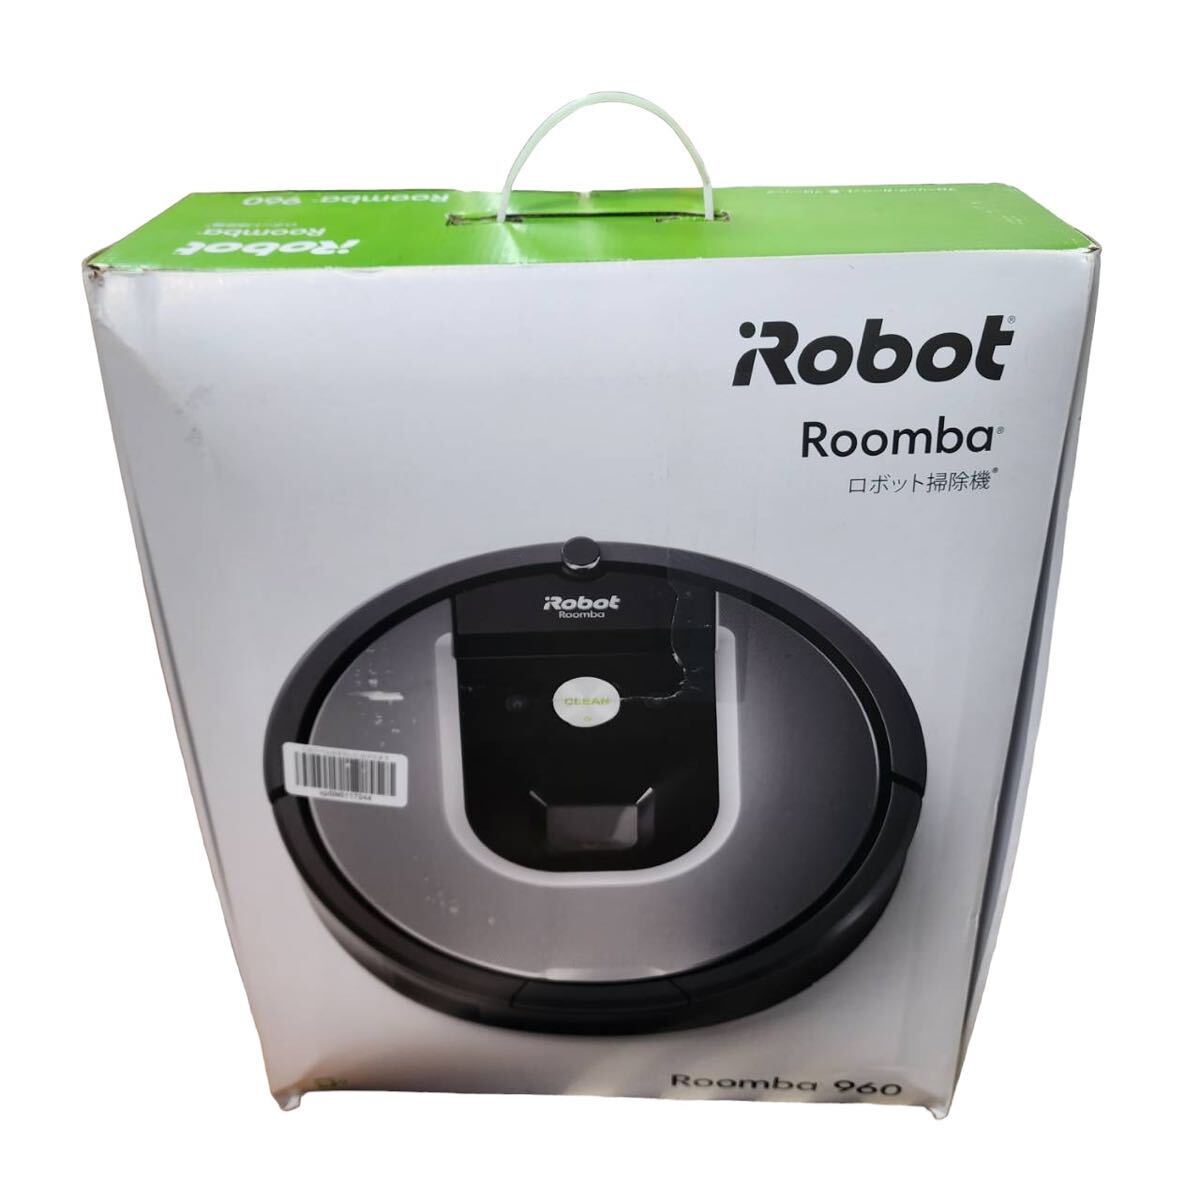  не использовался *Roomba roomba 960* робот пылесос * I робот iRobot* wifi соответствует * автоматика зарядка * всасывание сила *ma булавка g*Alexa соответствует *R960060